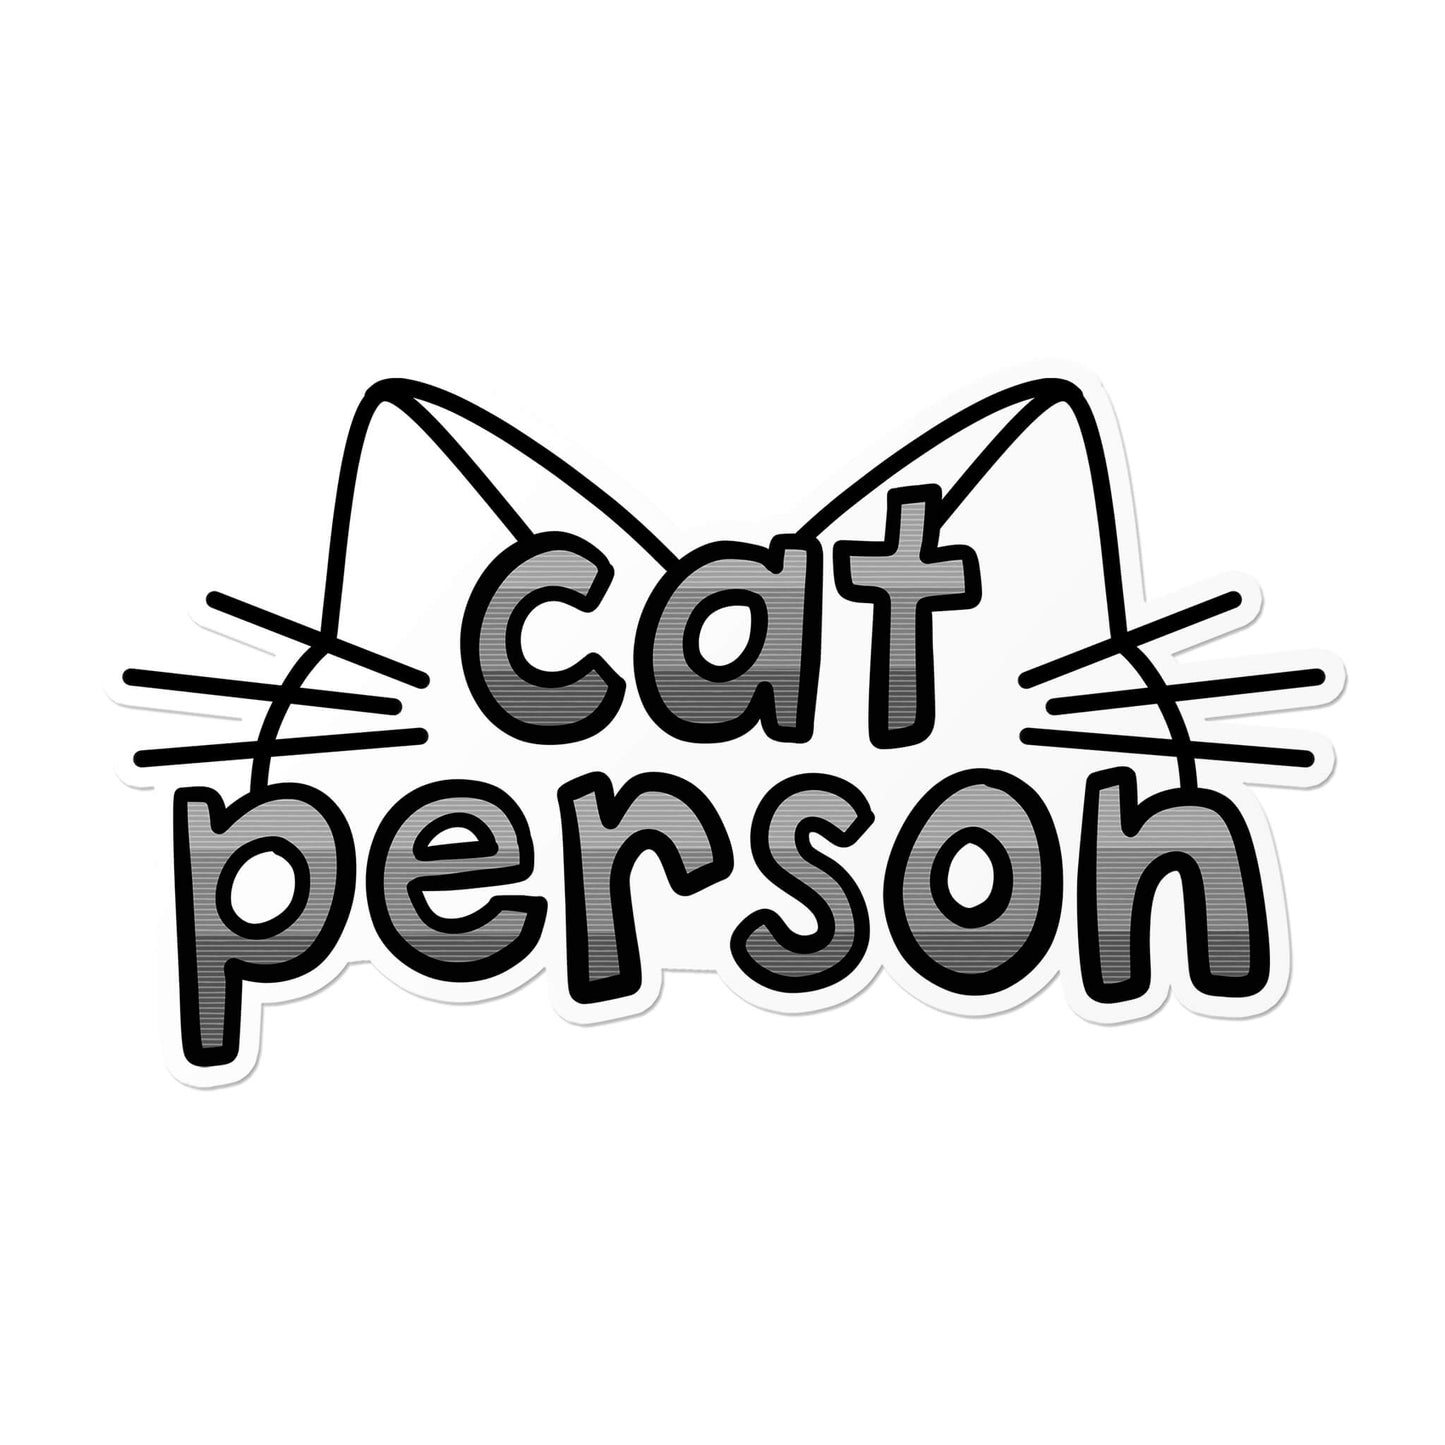 Cat Person Sticker